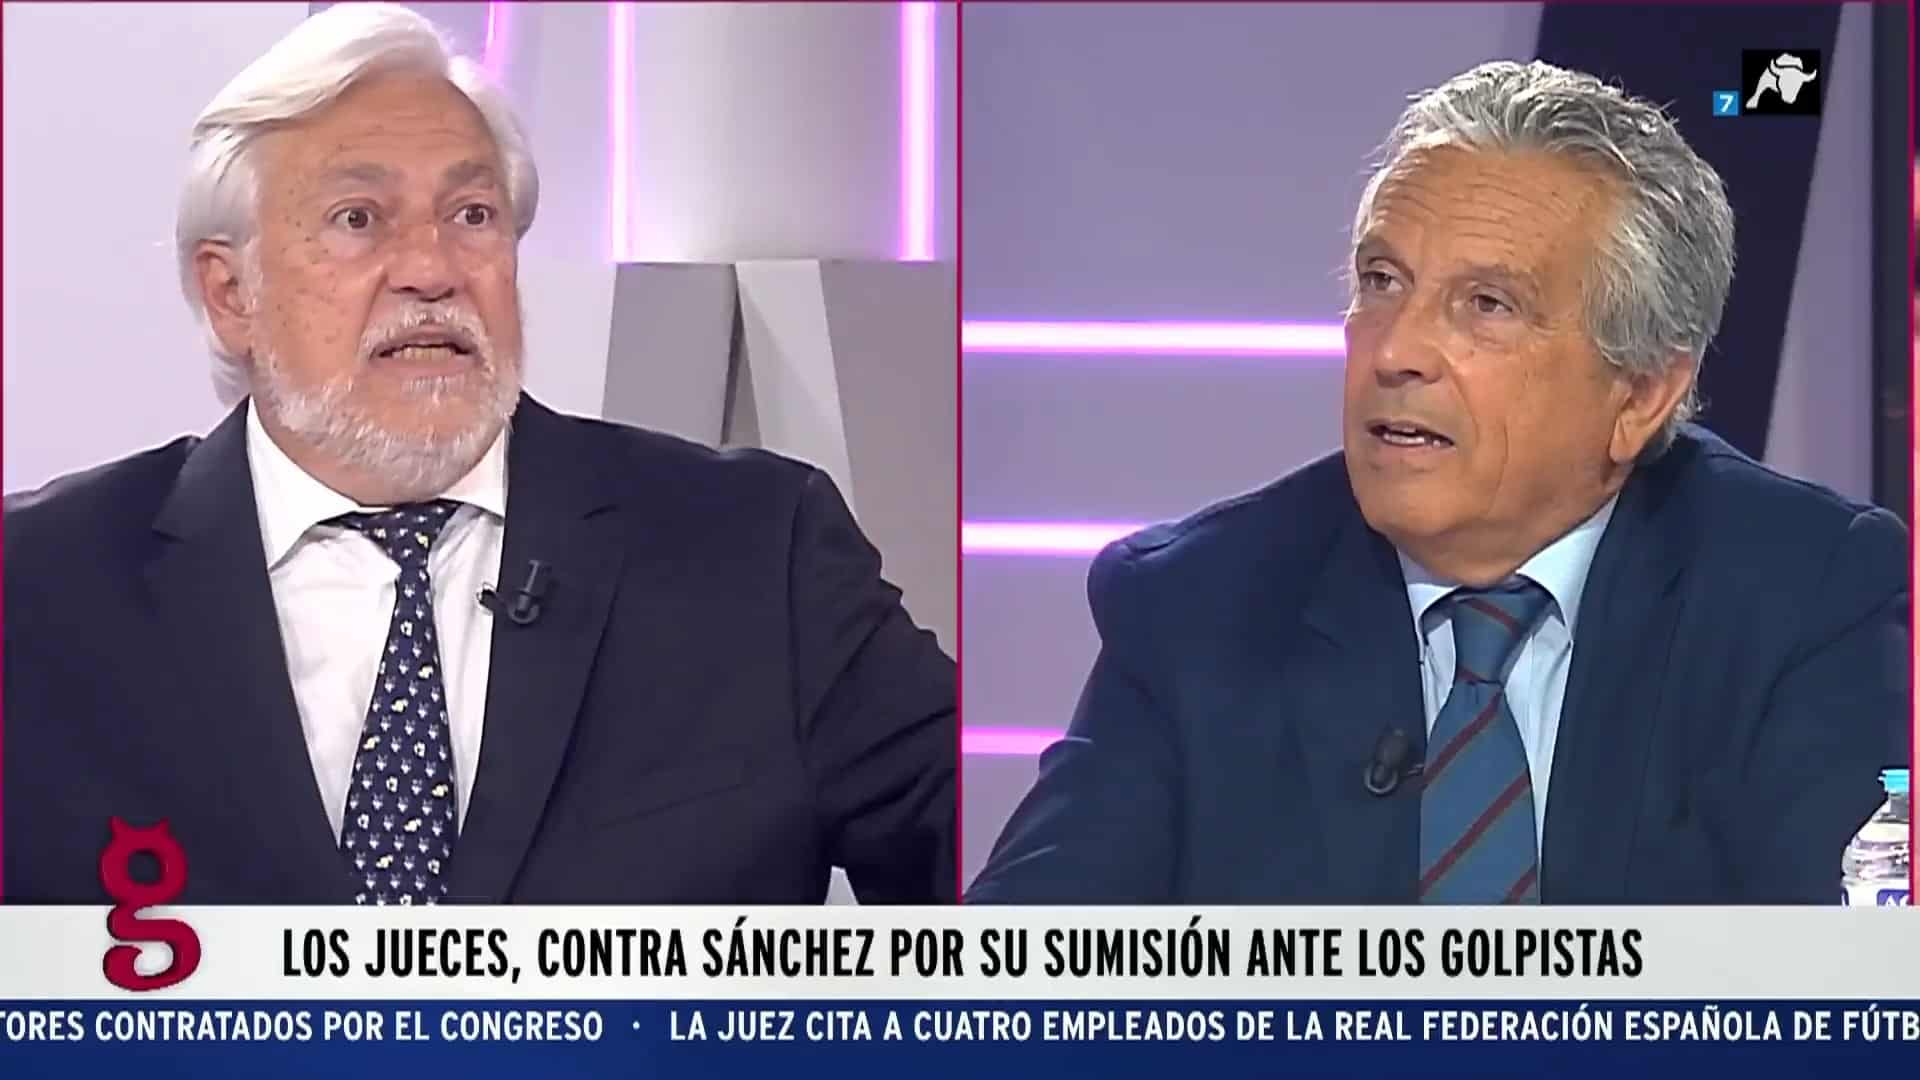 Encendido debate entre Ariza y Prego: “¡Dicen que lo que hace Sánchez está coj***udo!”